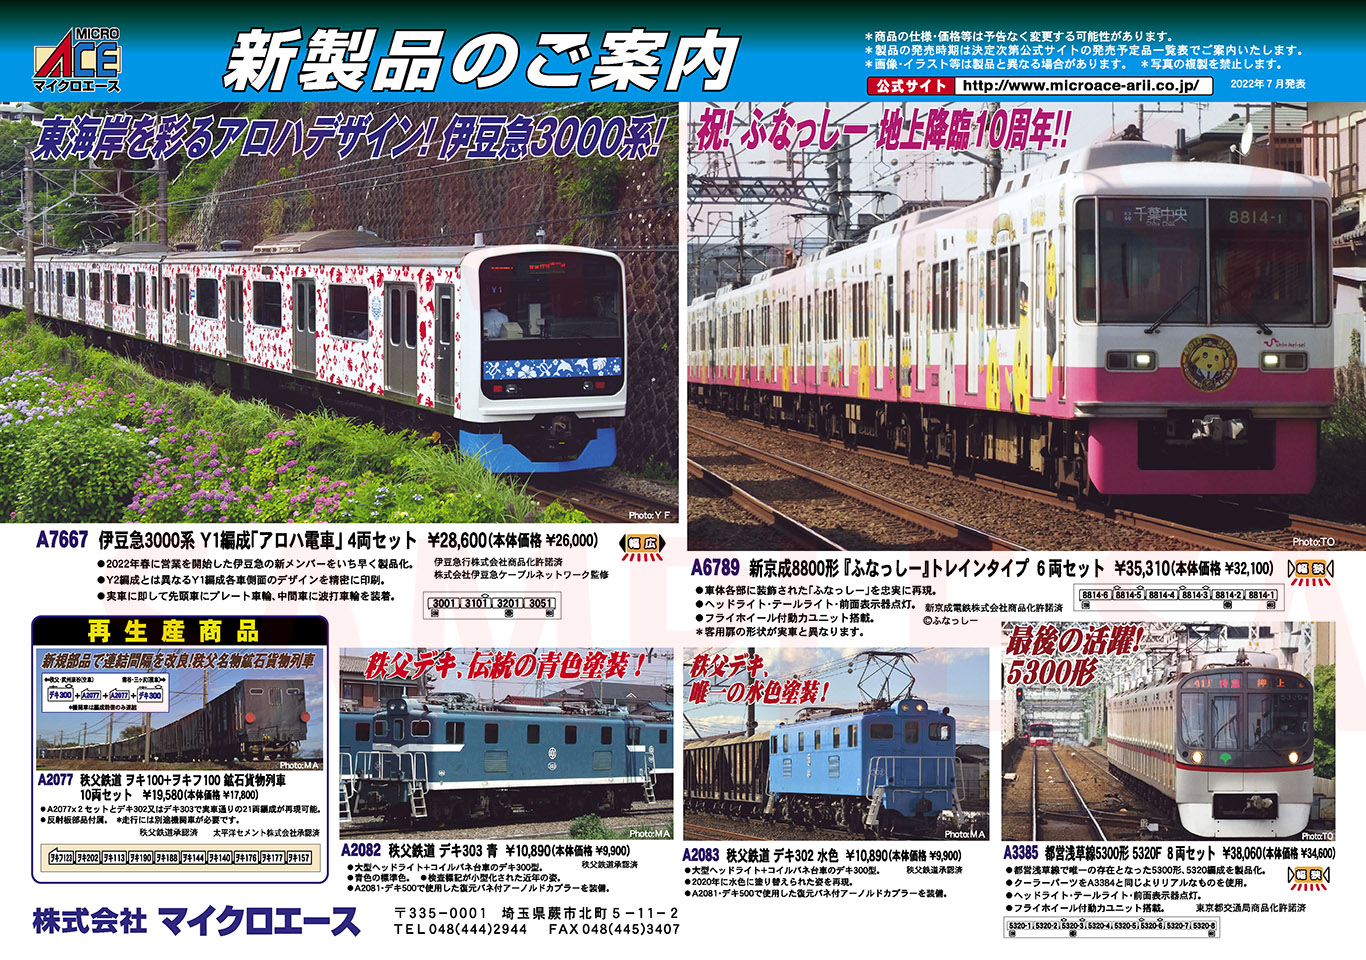 秩父鉄道 デキ303 青 (鉄道模型) - ホビーサーチ 鉄道模型 N